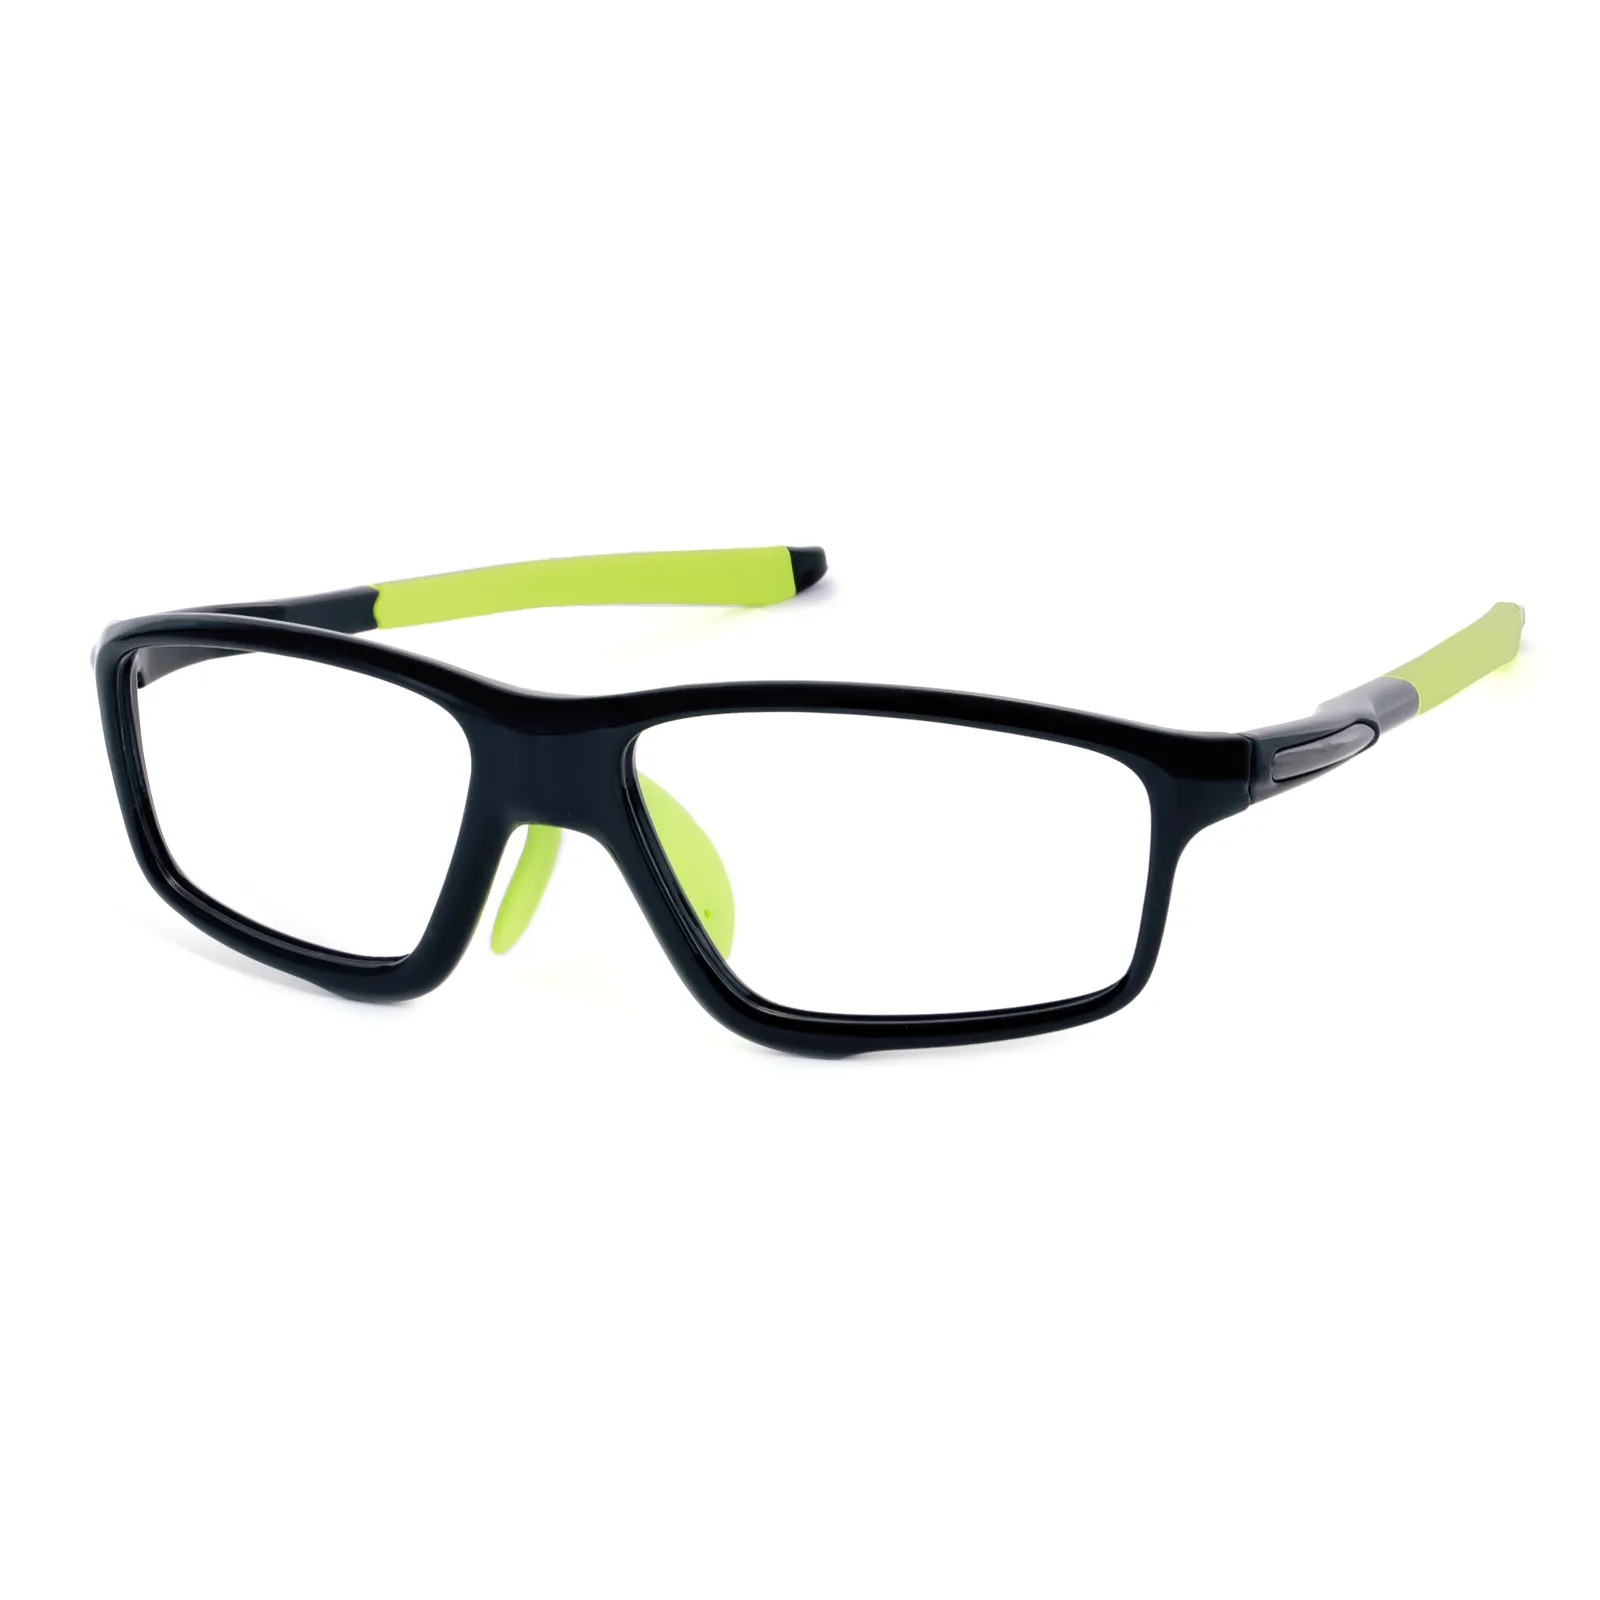 Locke - Square Black/Green Glasses for Men & Women